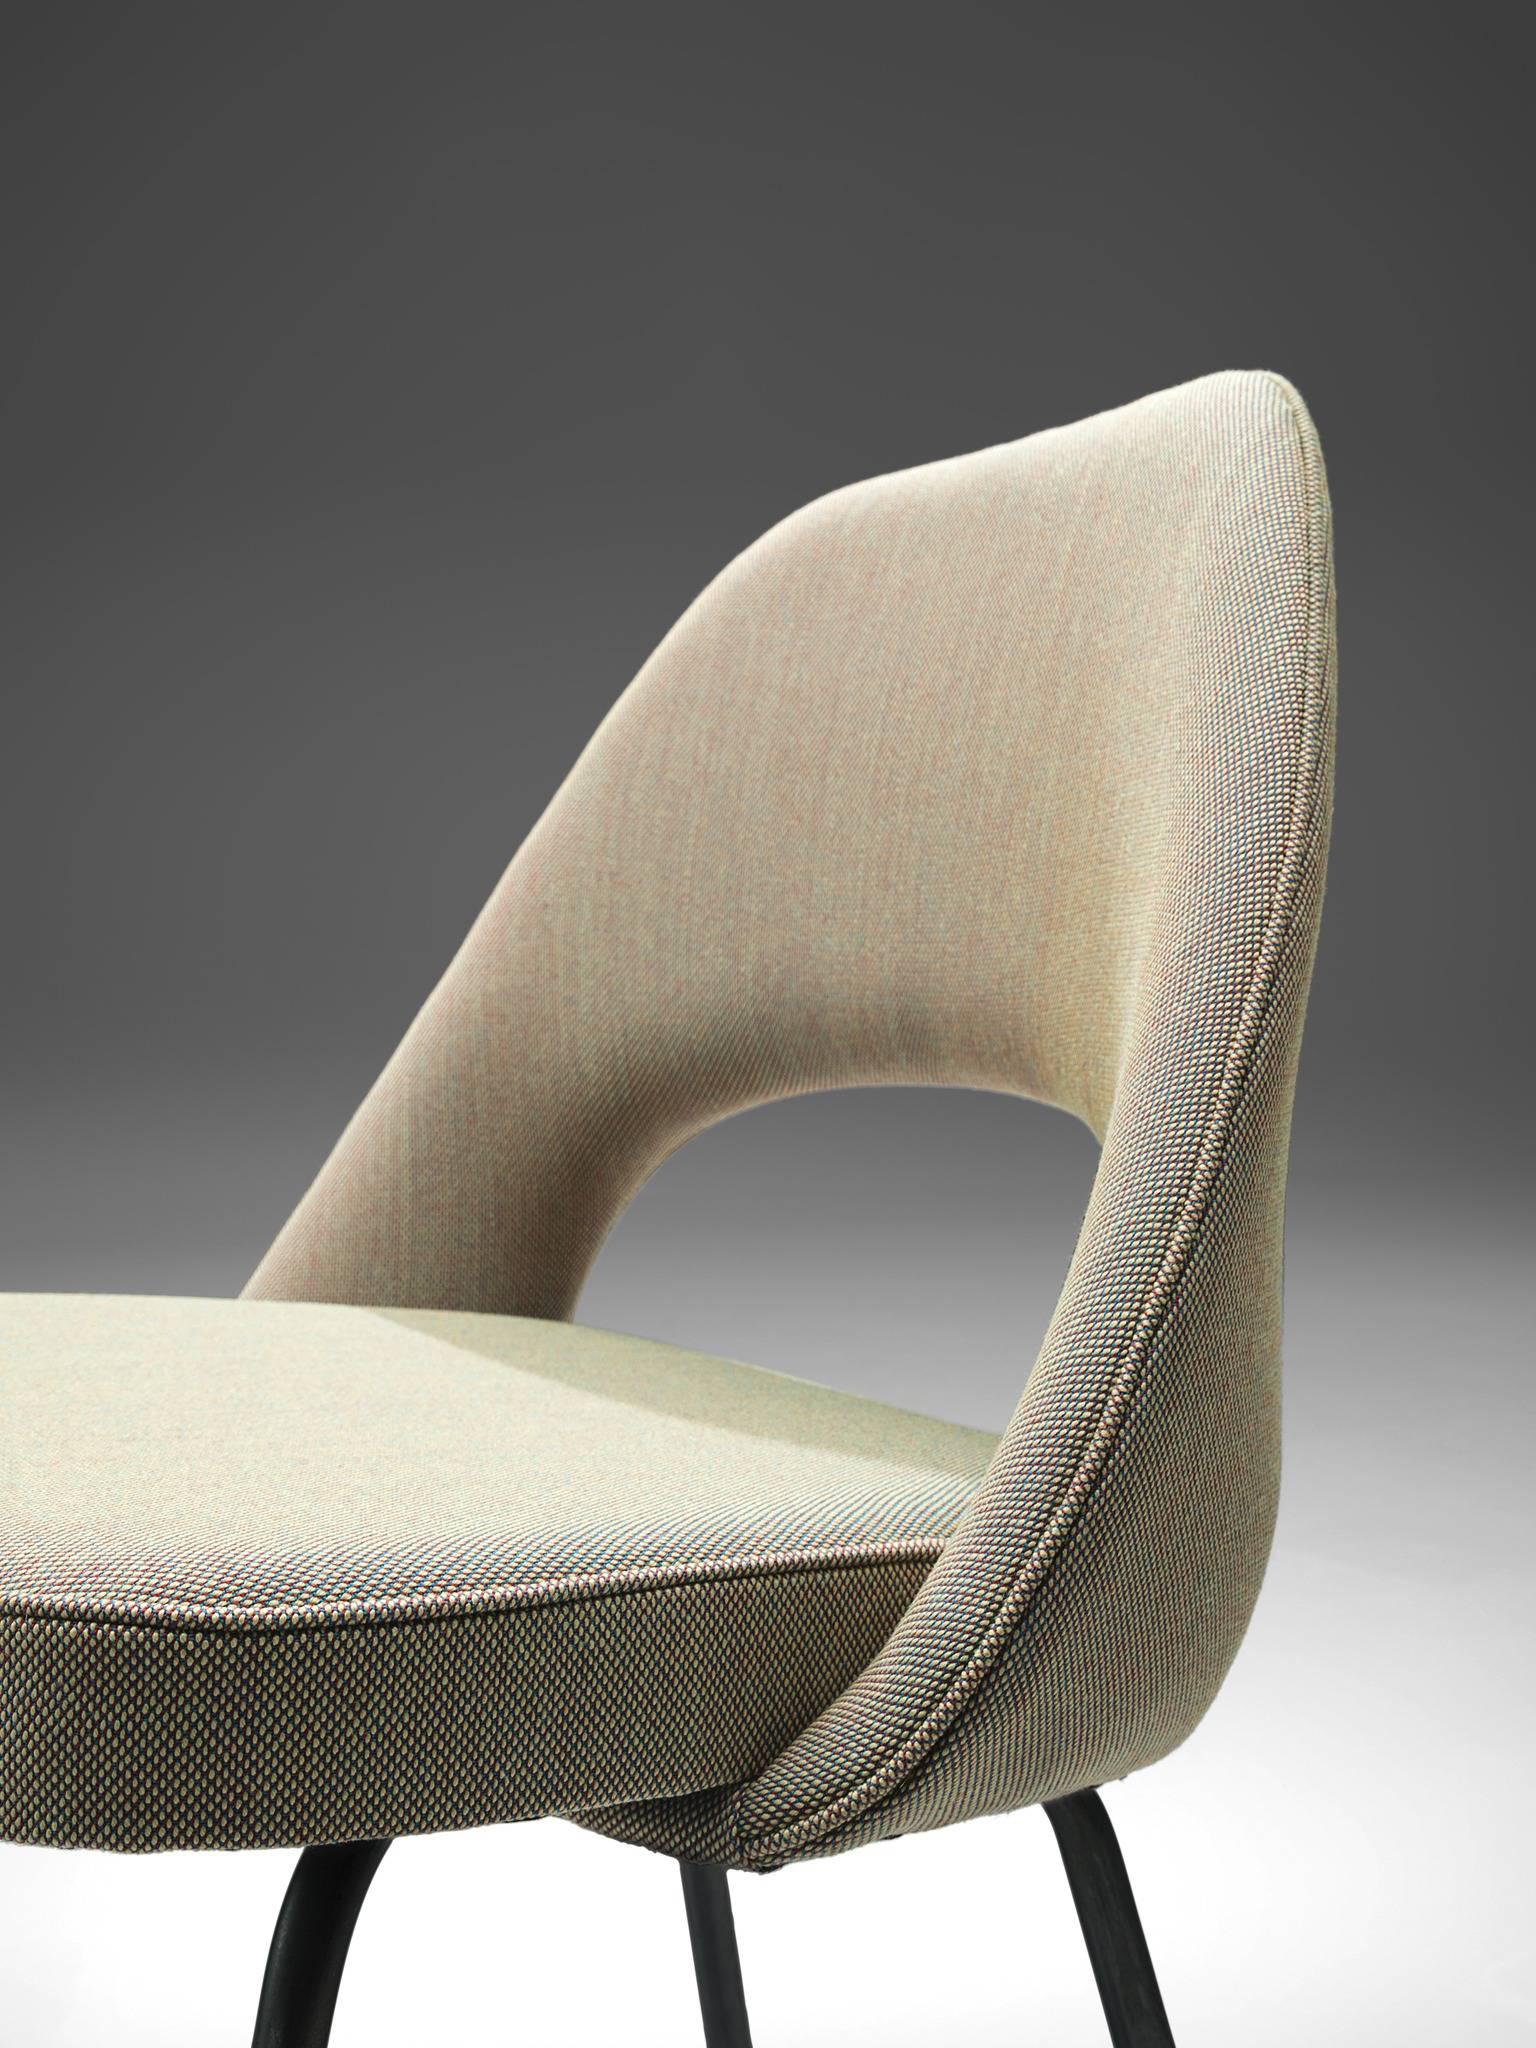 Eero Saarinen for Knoll Chairs 1